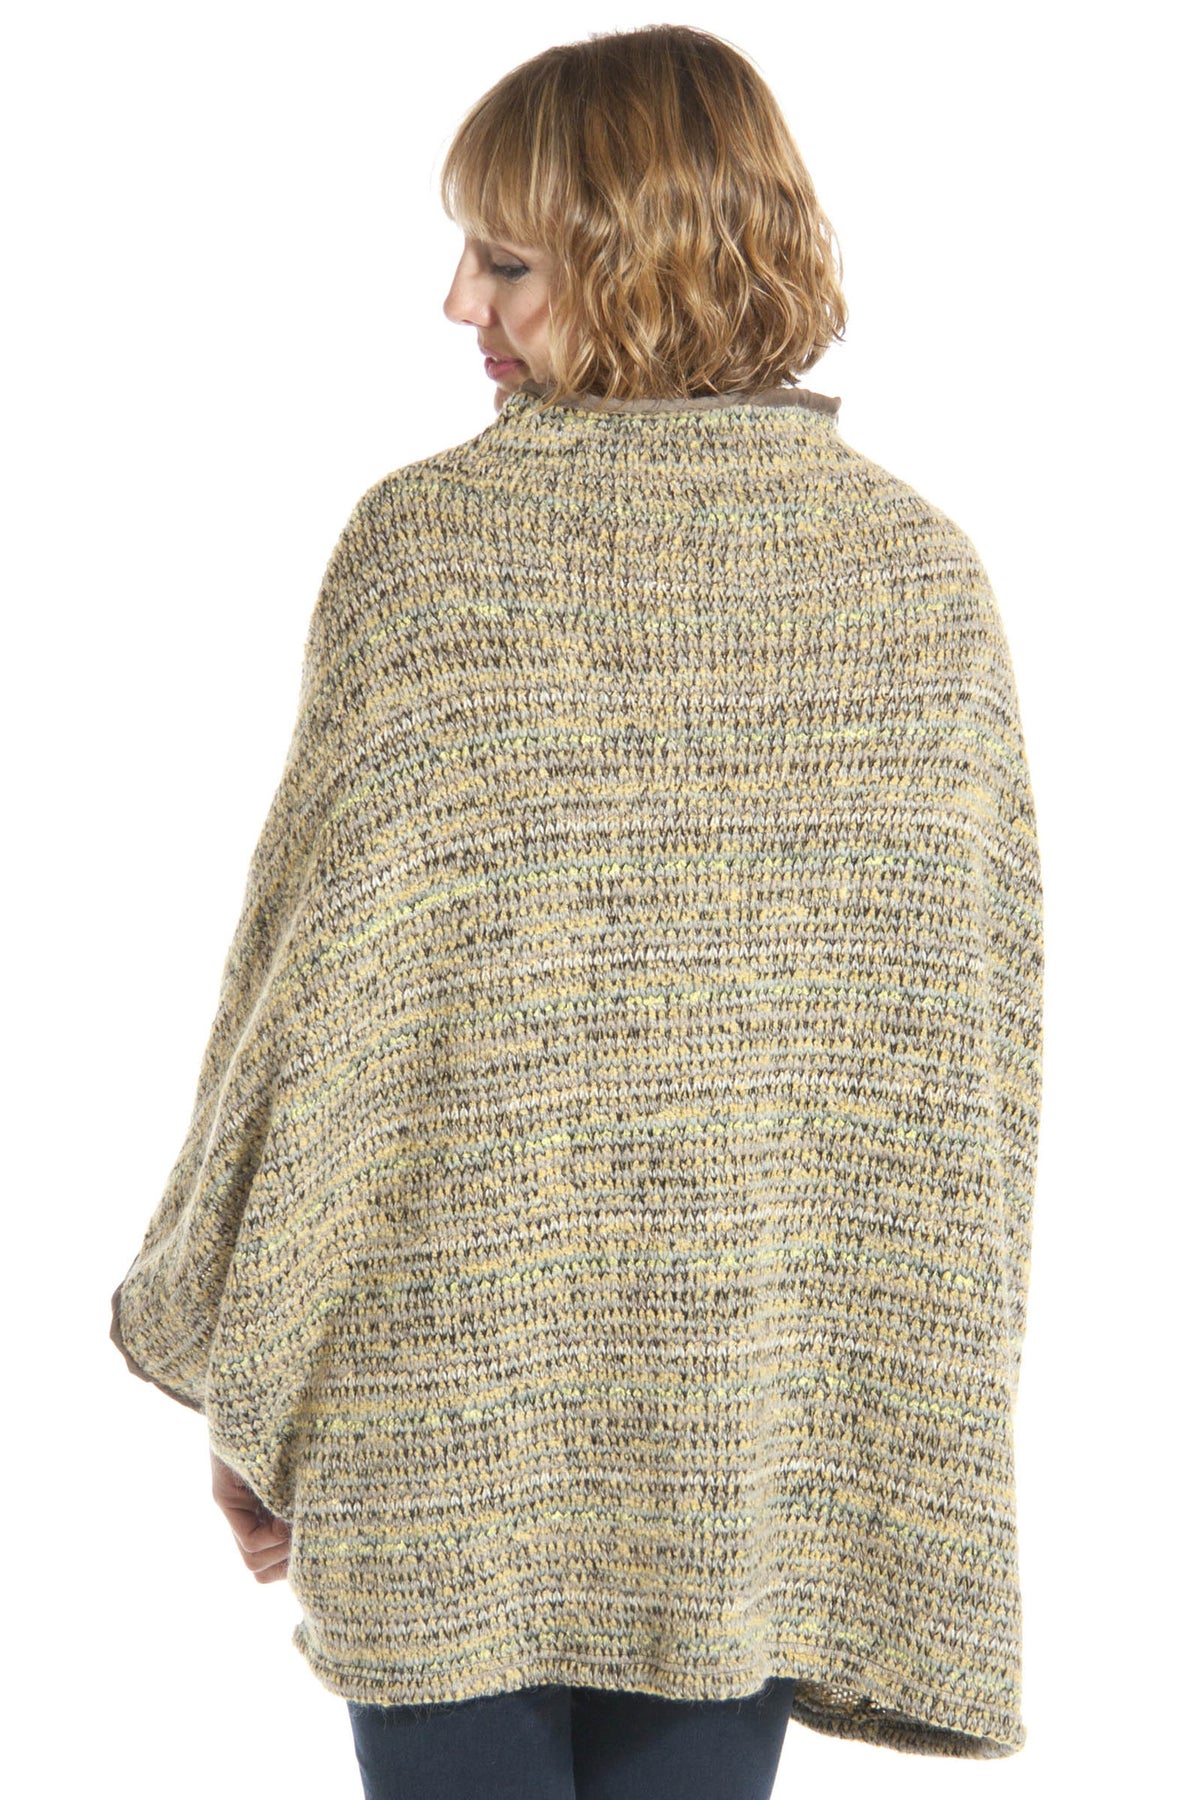 Italian Soft Wool Boxy Sweater